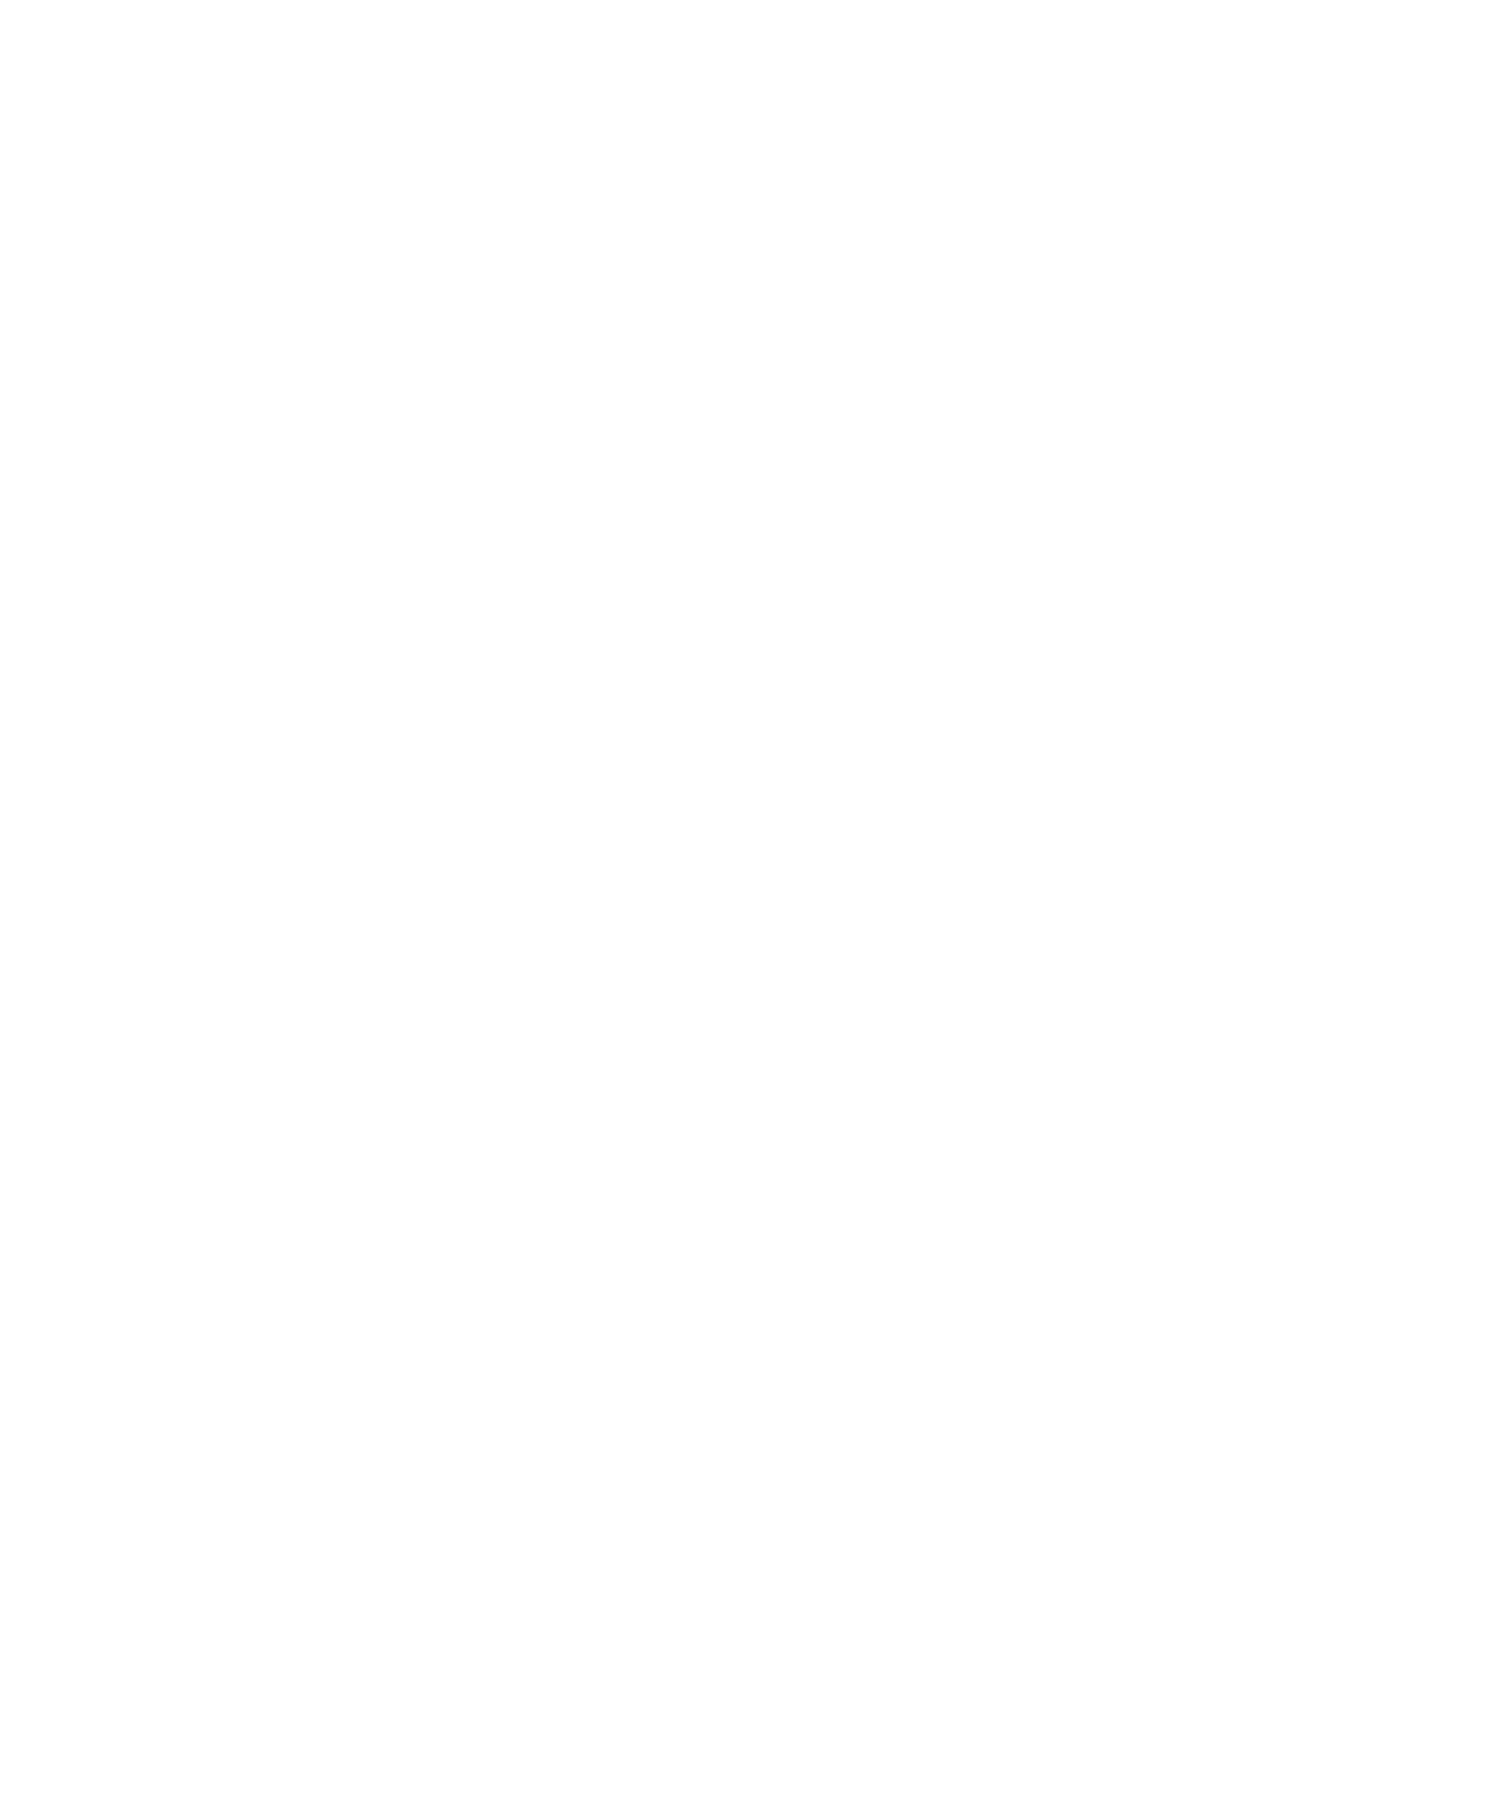 Tilion Brewing